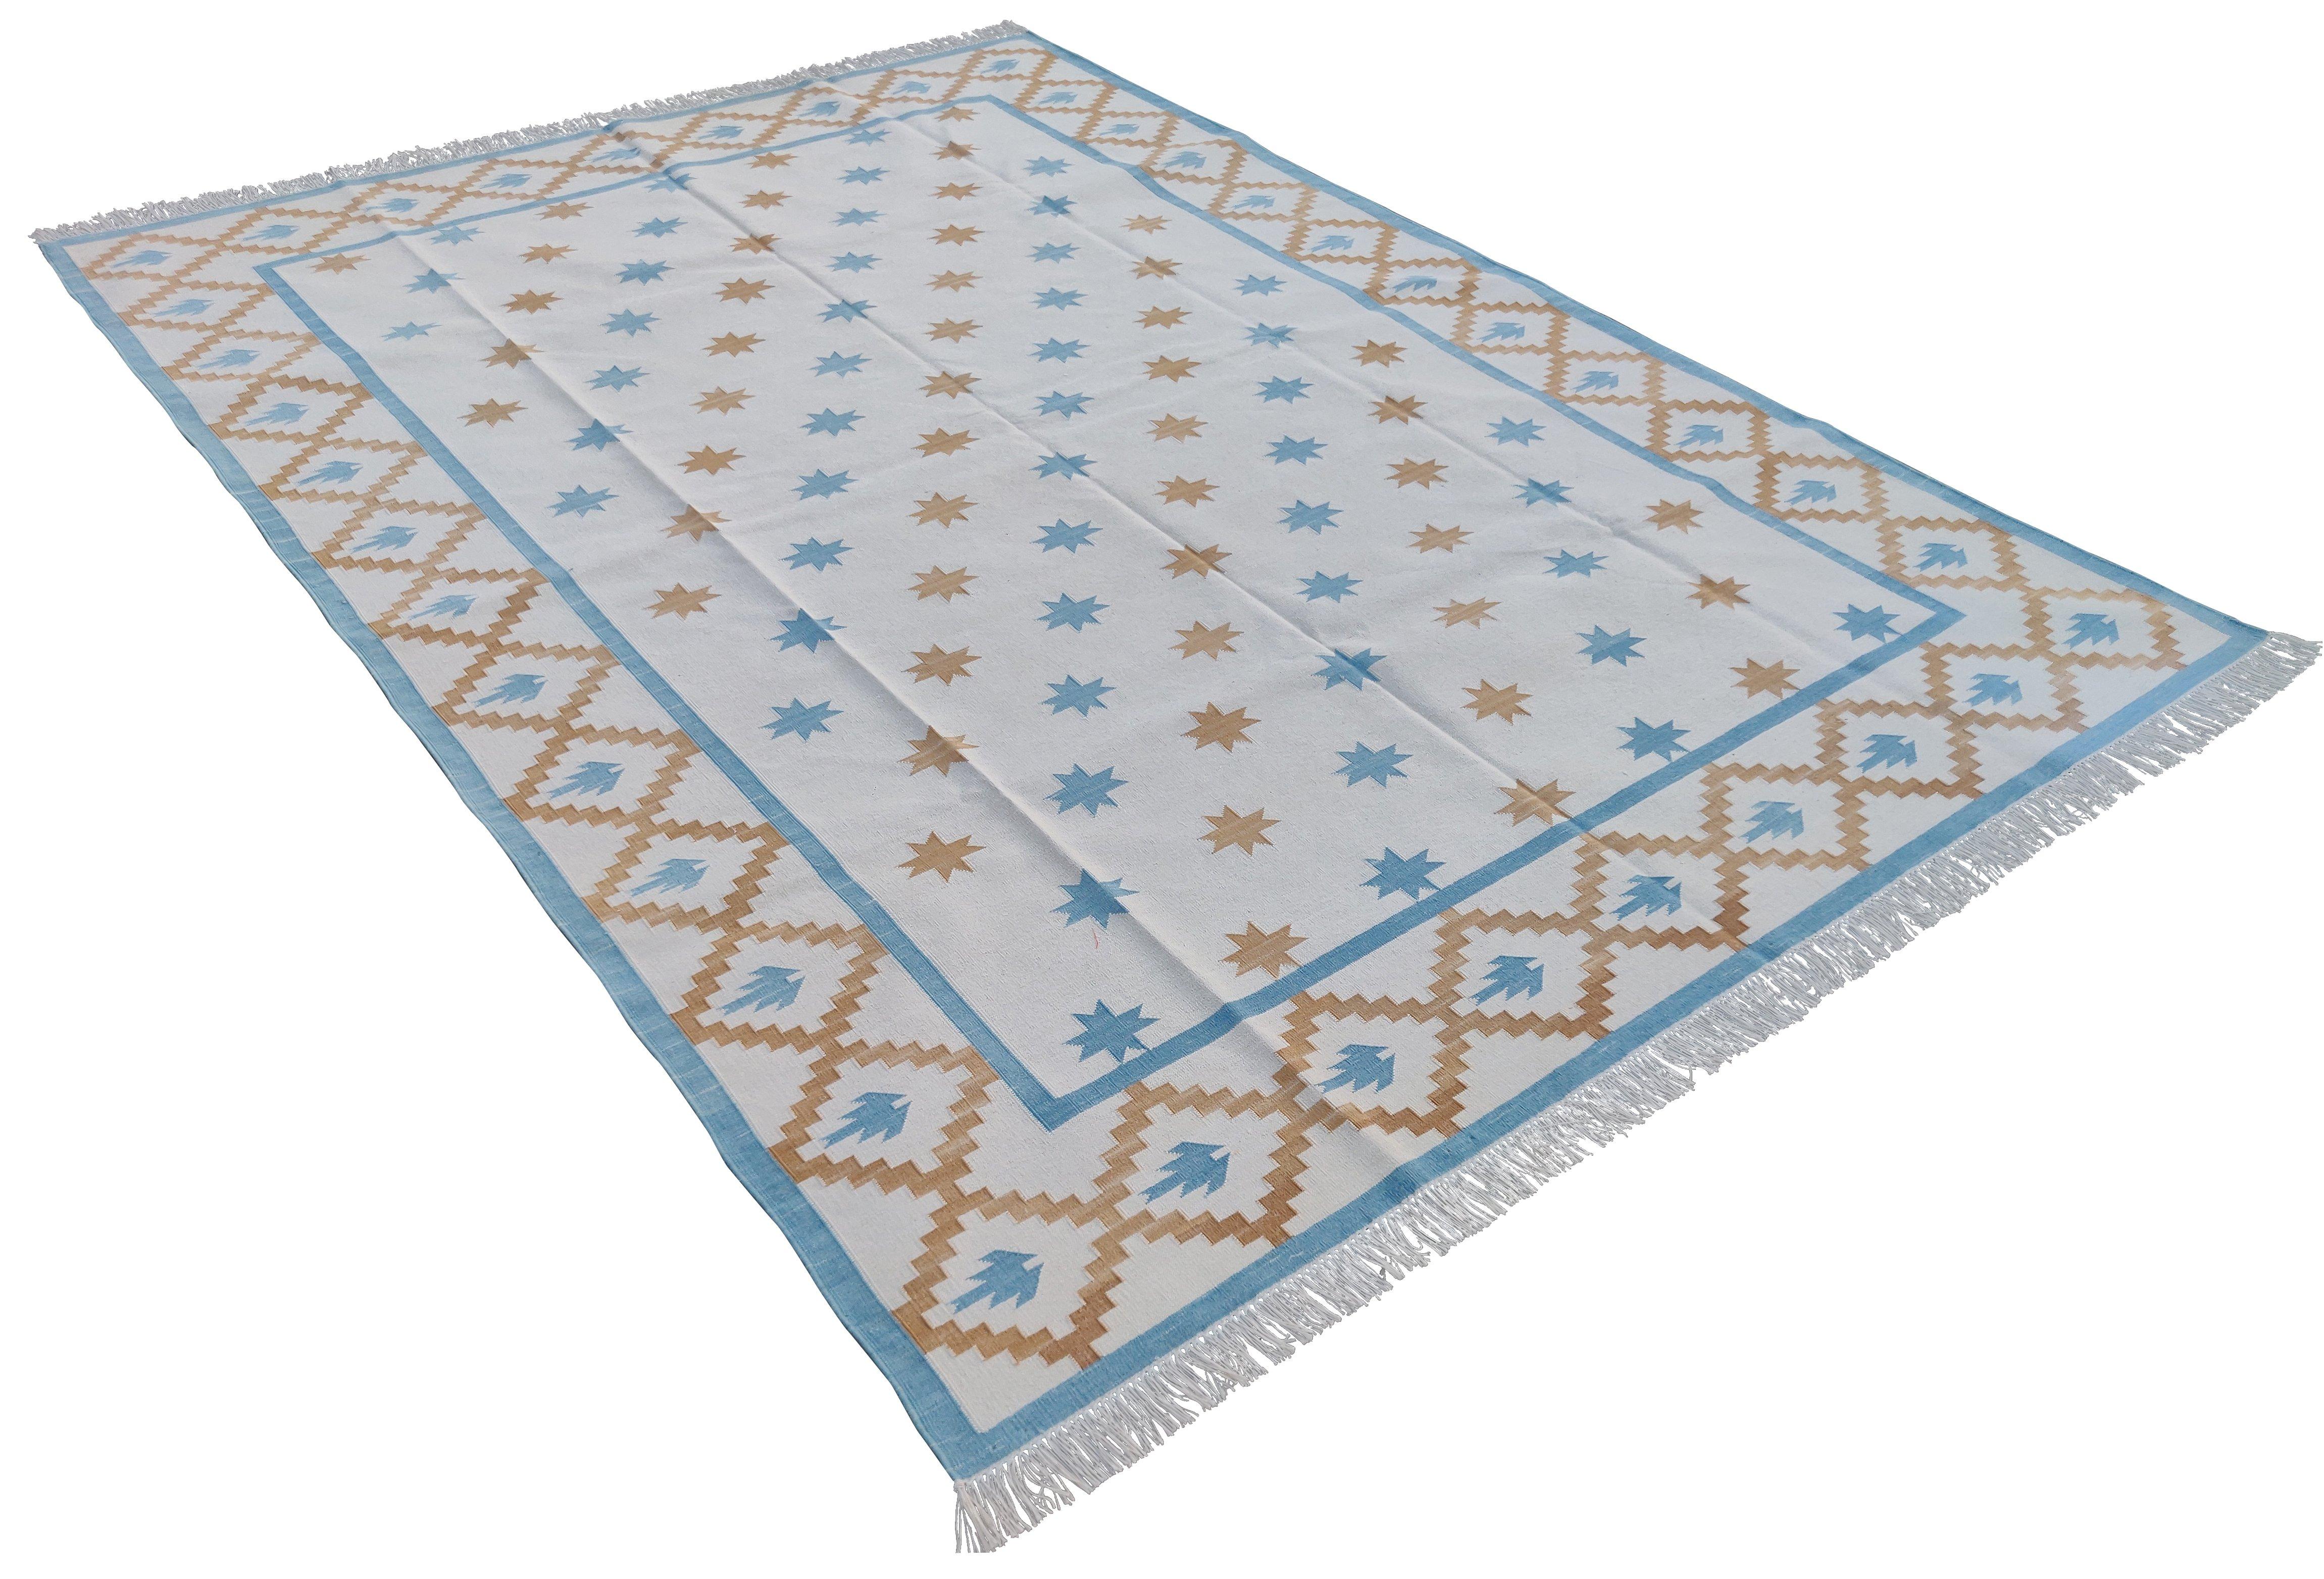 Baumwolle Natürliche pflanzlich gefärbte Creme, Himmelblau und Tan Geometrische Star indischen Teppich-6'x9'
Diese speziellen flachgewebten Dhurries werden aus 15-fachem Garn aus 100% Baumwolle handgewebt. Aufgrund der speziellen